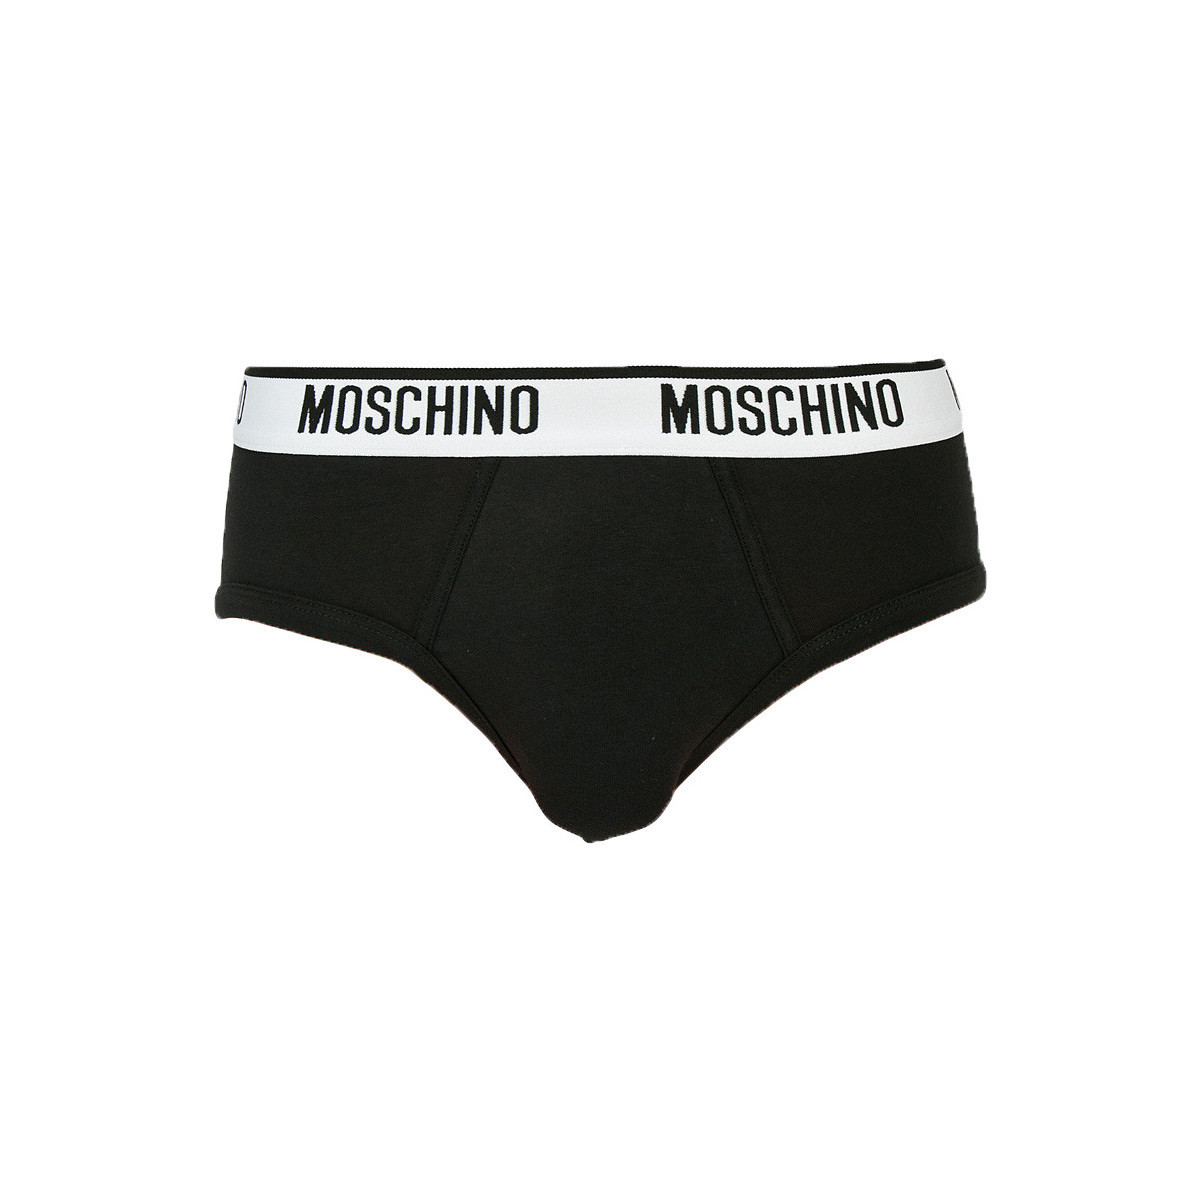 Moschino Mens Brief Underwear (Size XL, 40-42) - Black